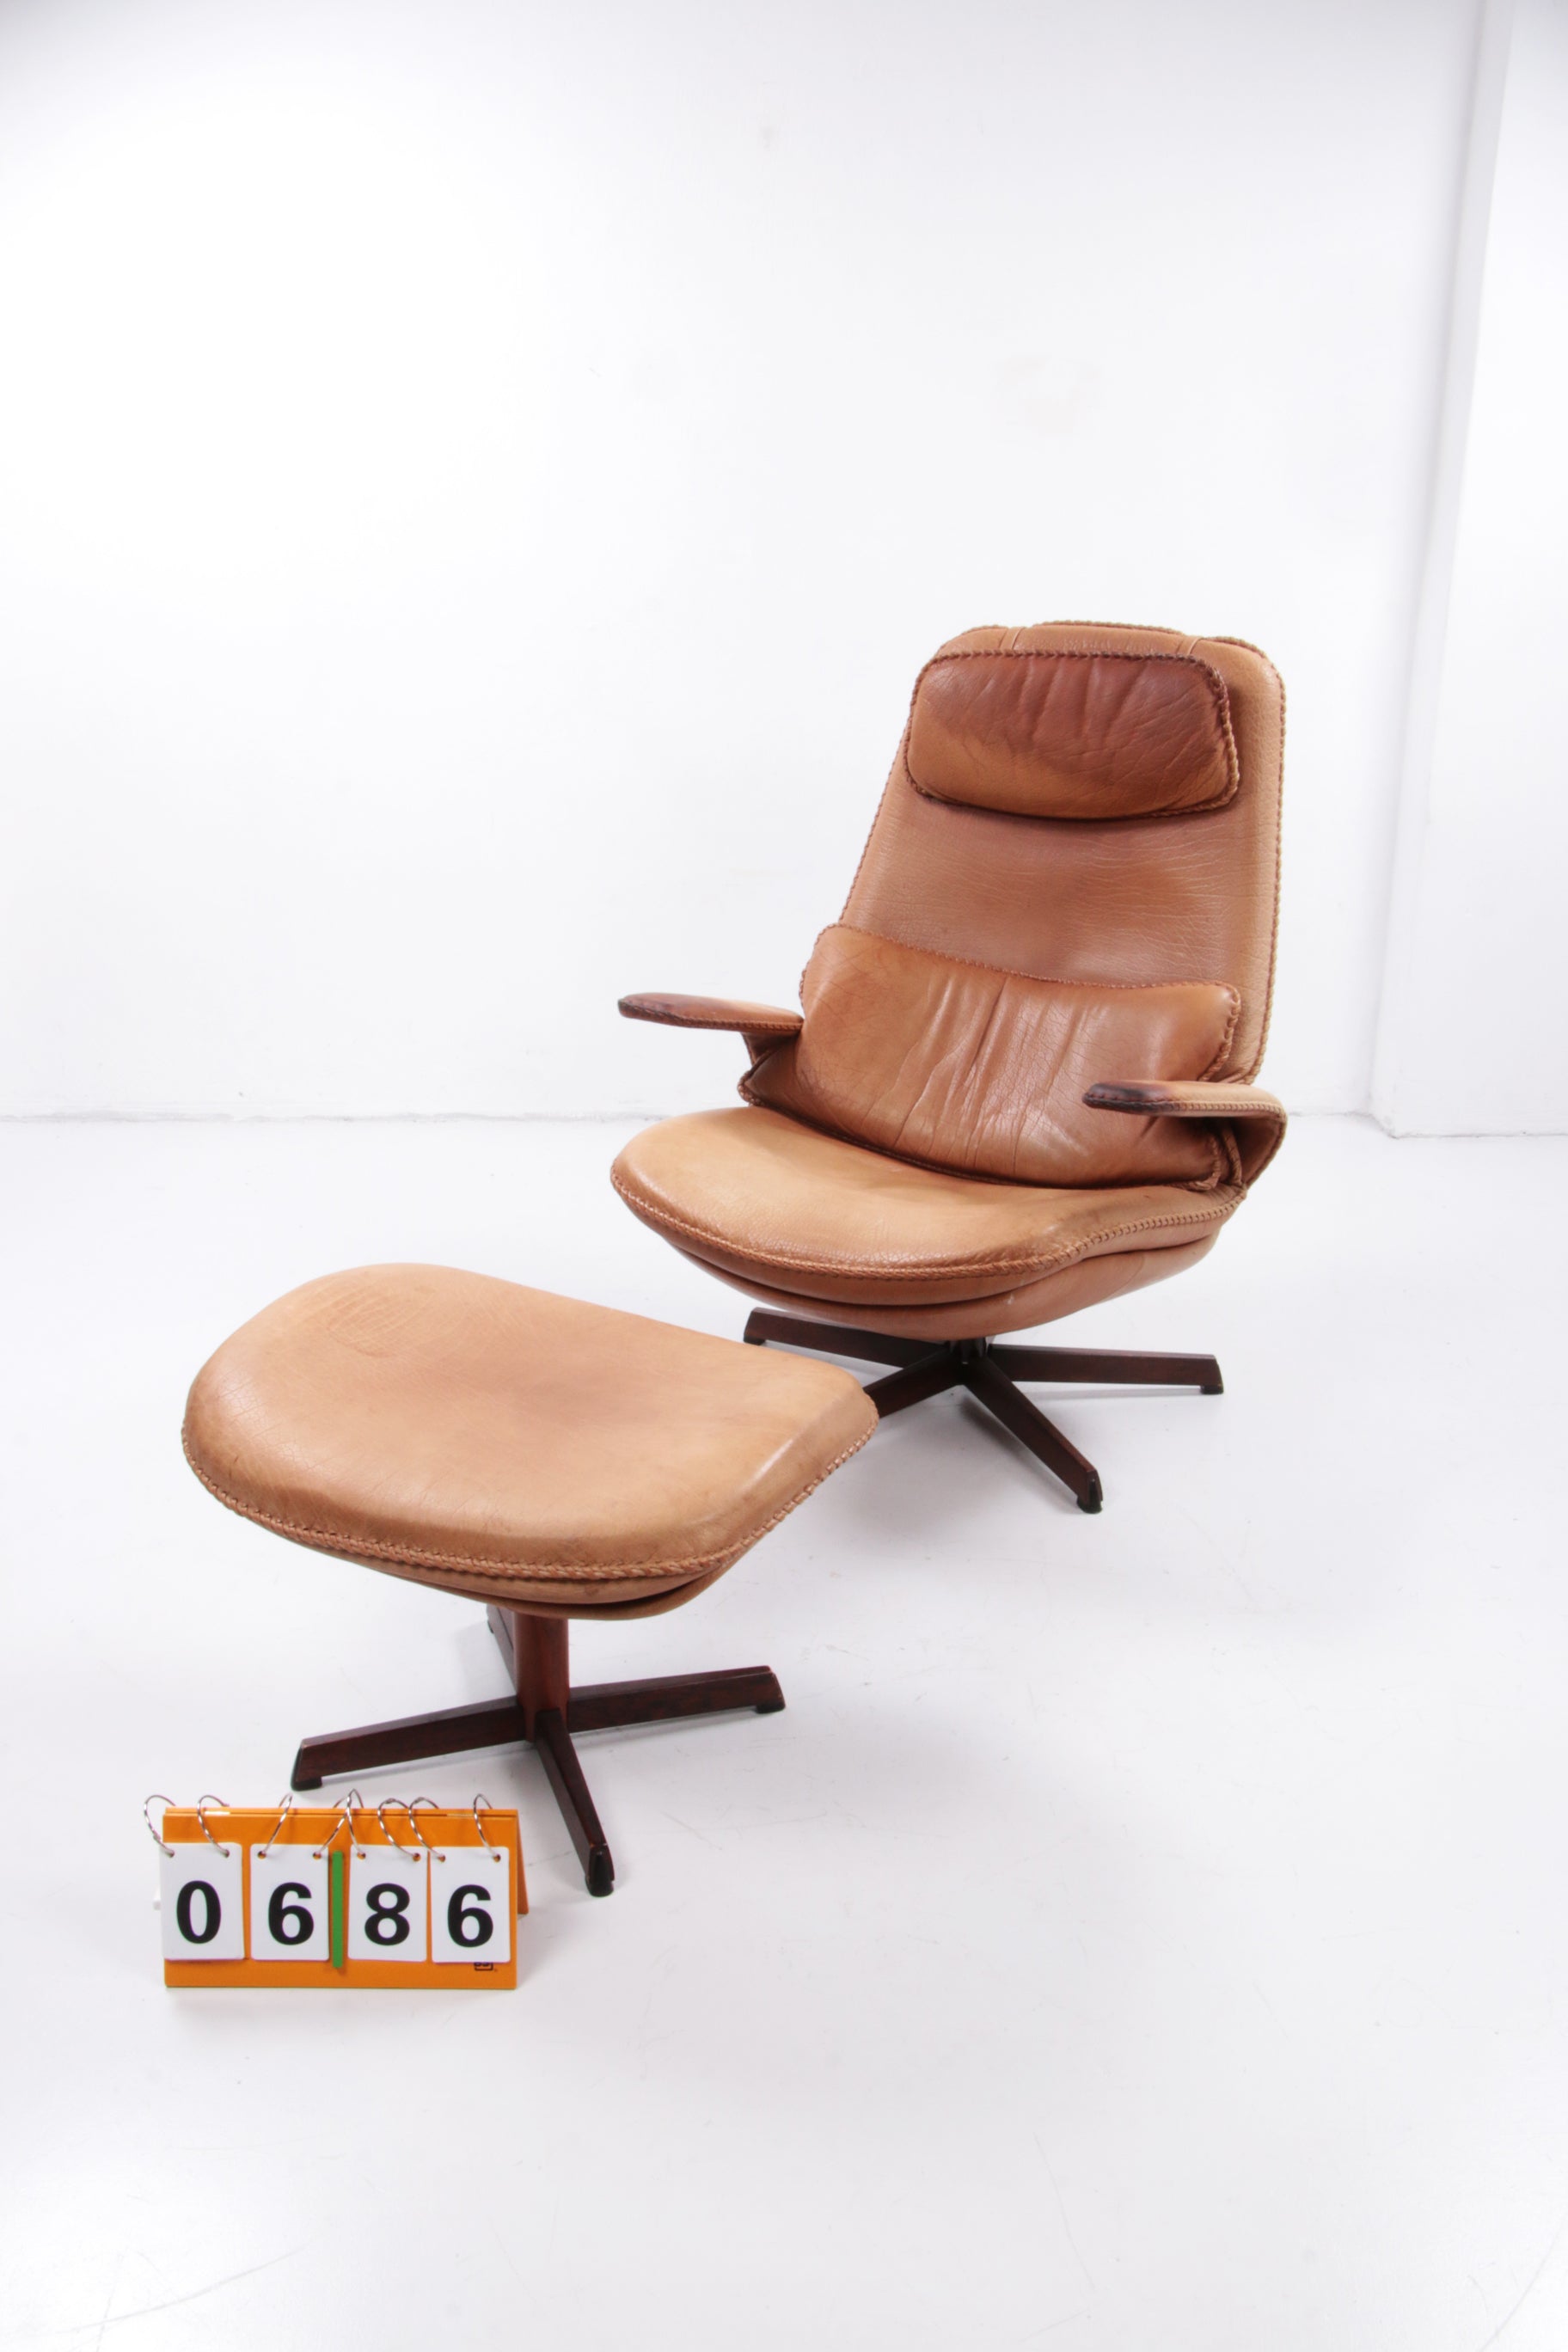 Deense Buffel leren verstelbare fauteuil & poef set van M&S Mobler, 1960s Denemarken.